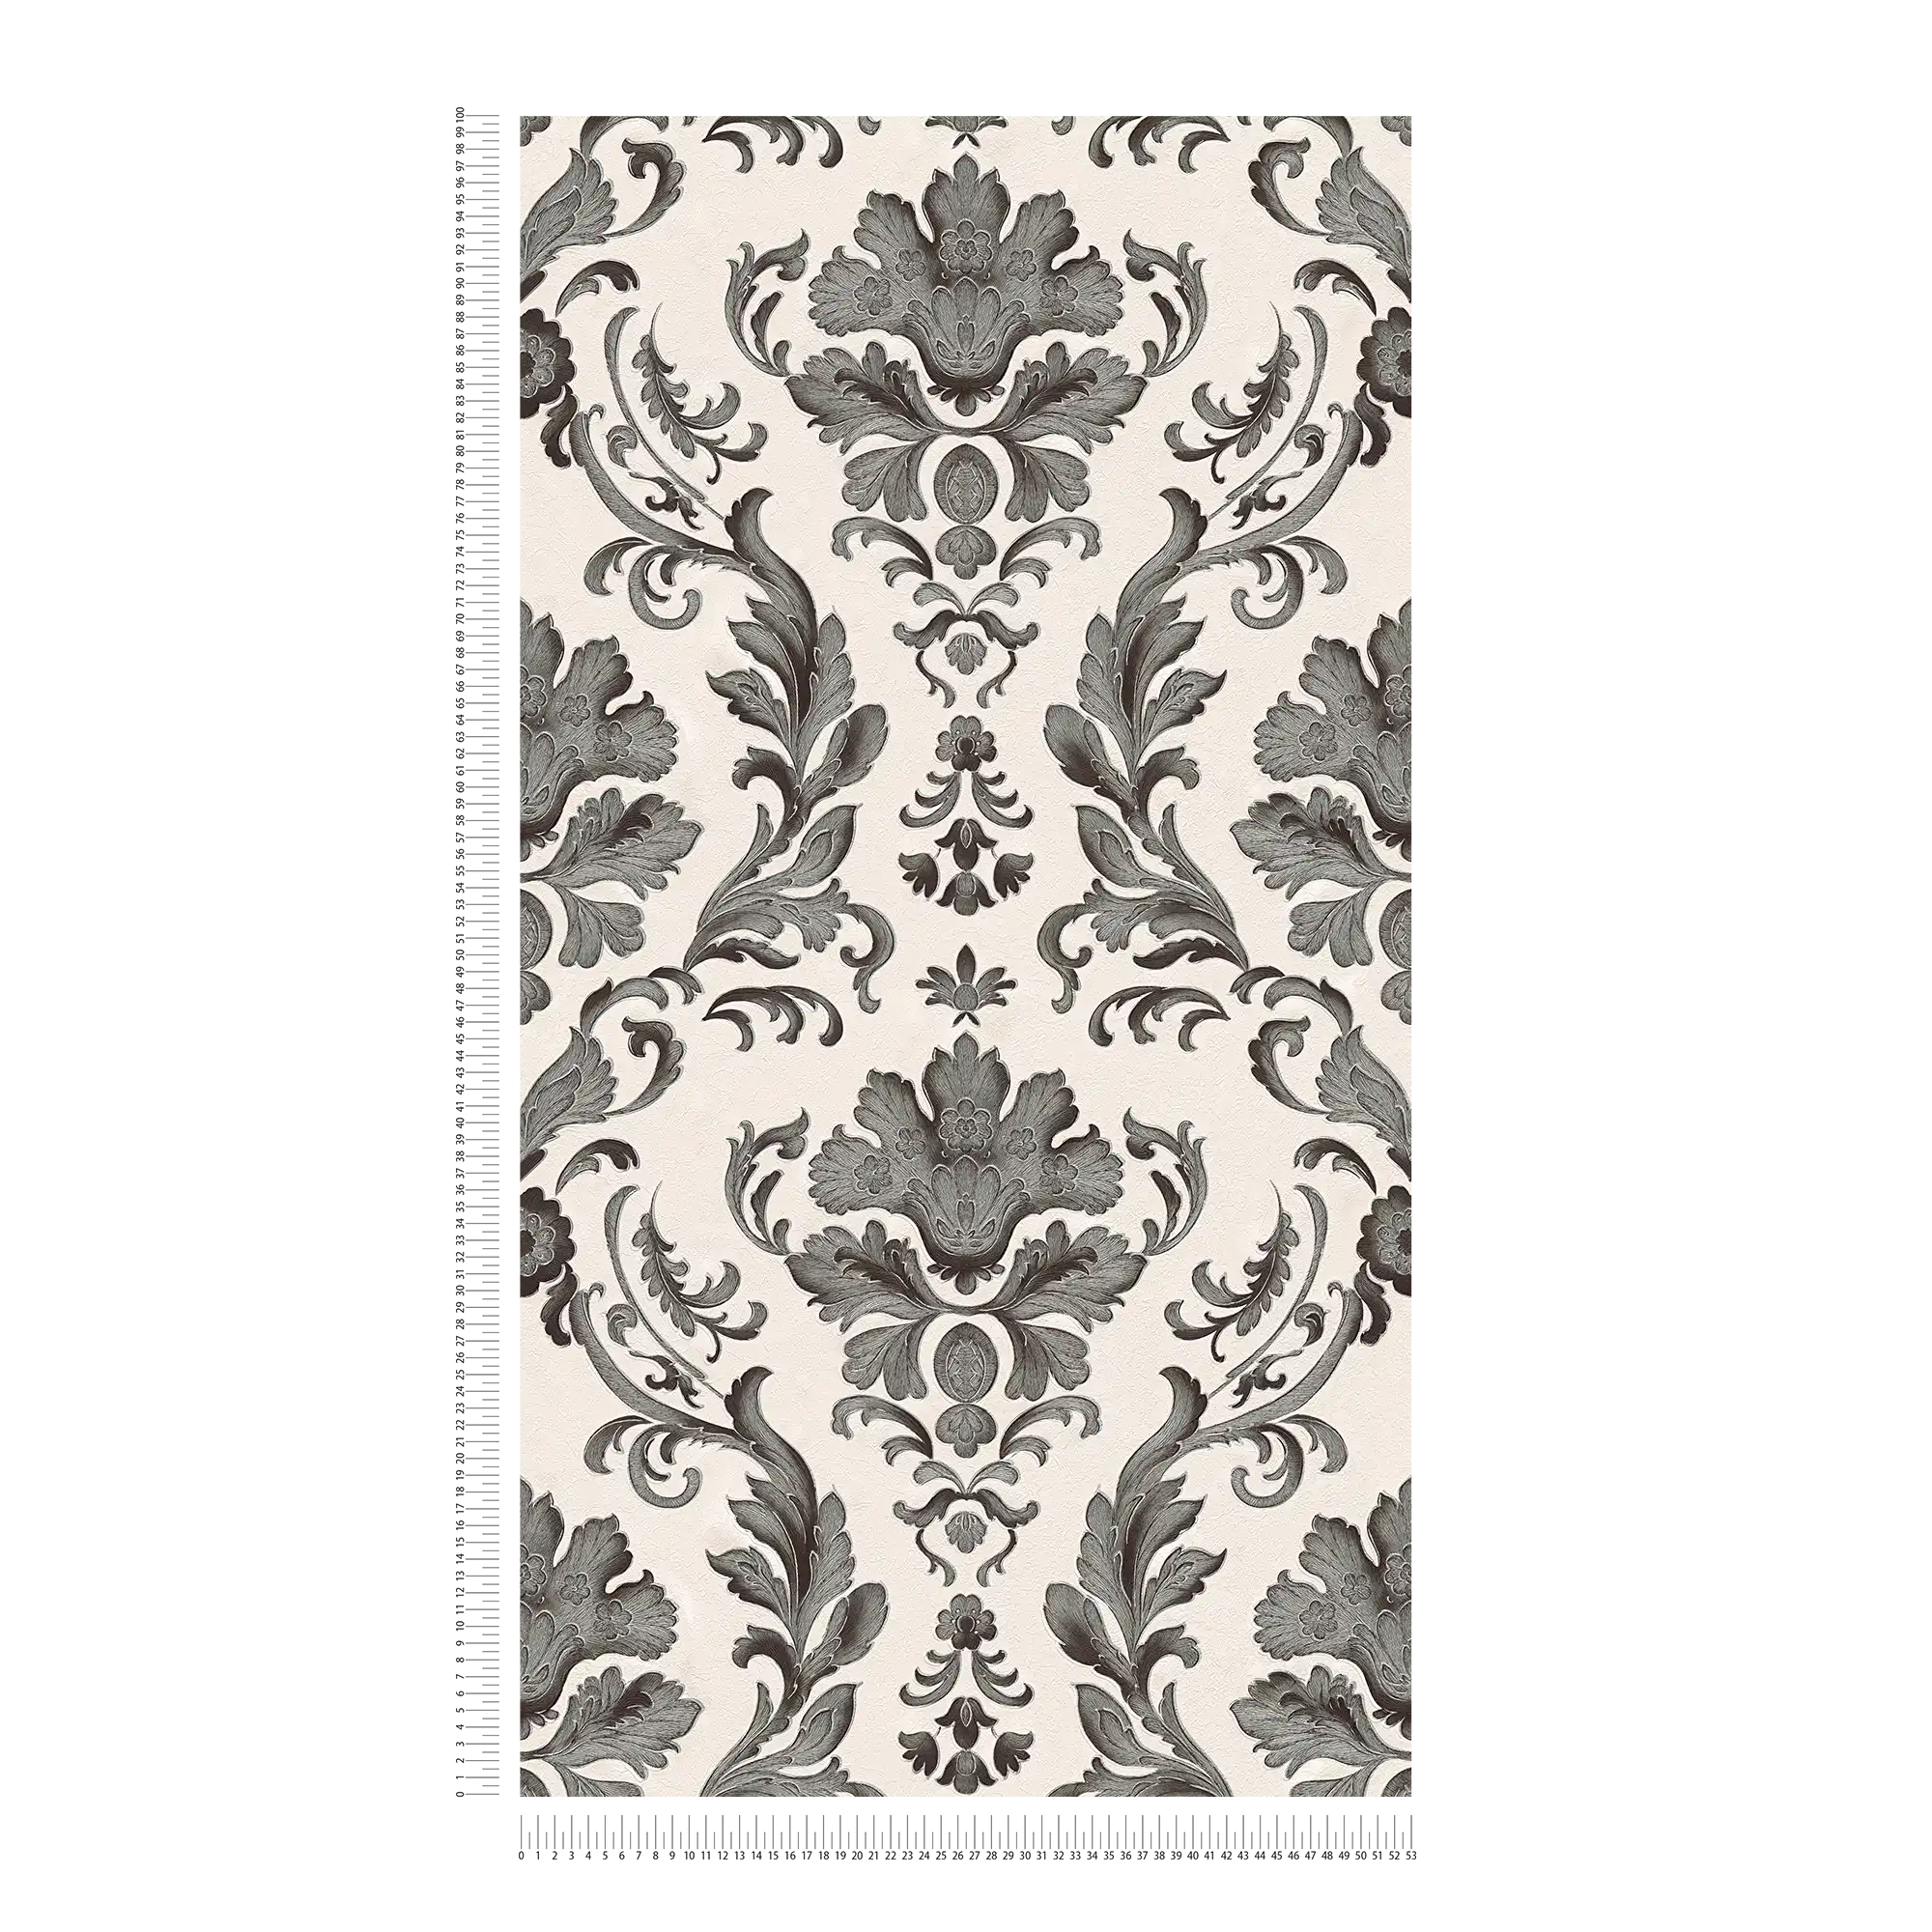             Tapete mit detaillierten Ornamenten im floralen Stil – Schwarz, Weiß
        